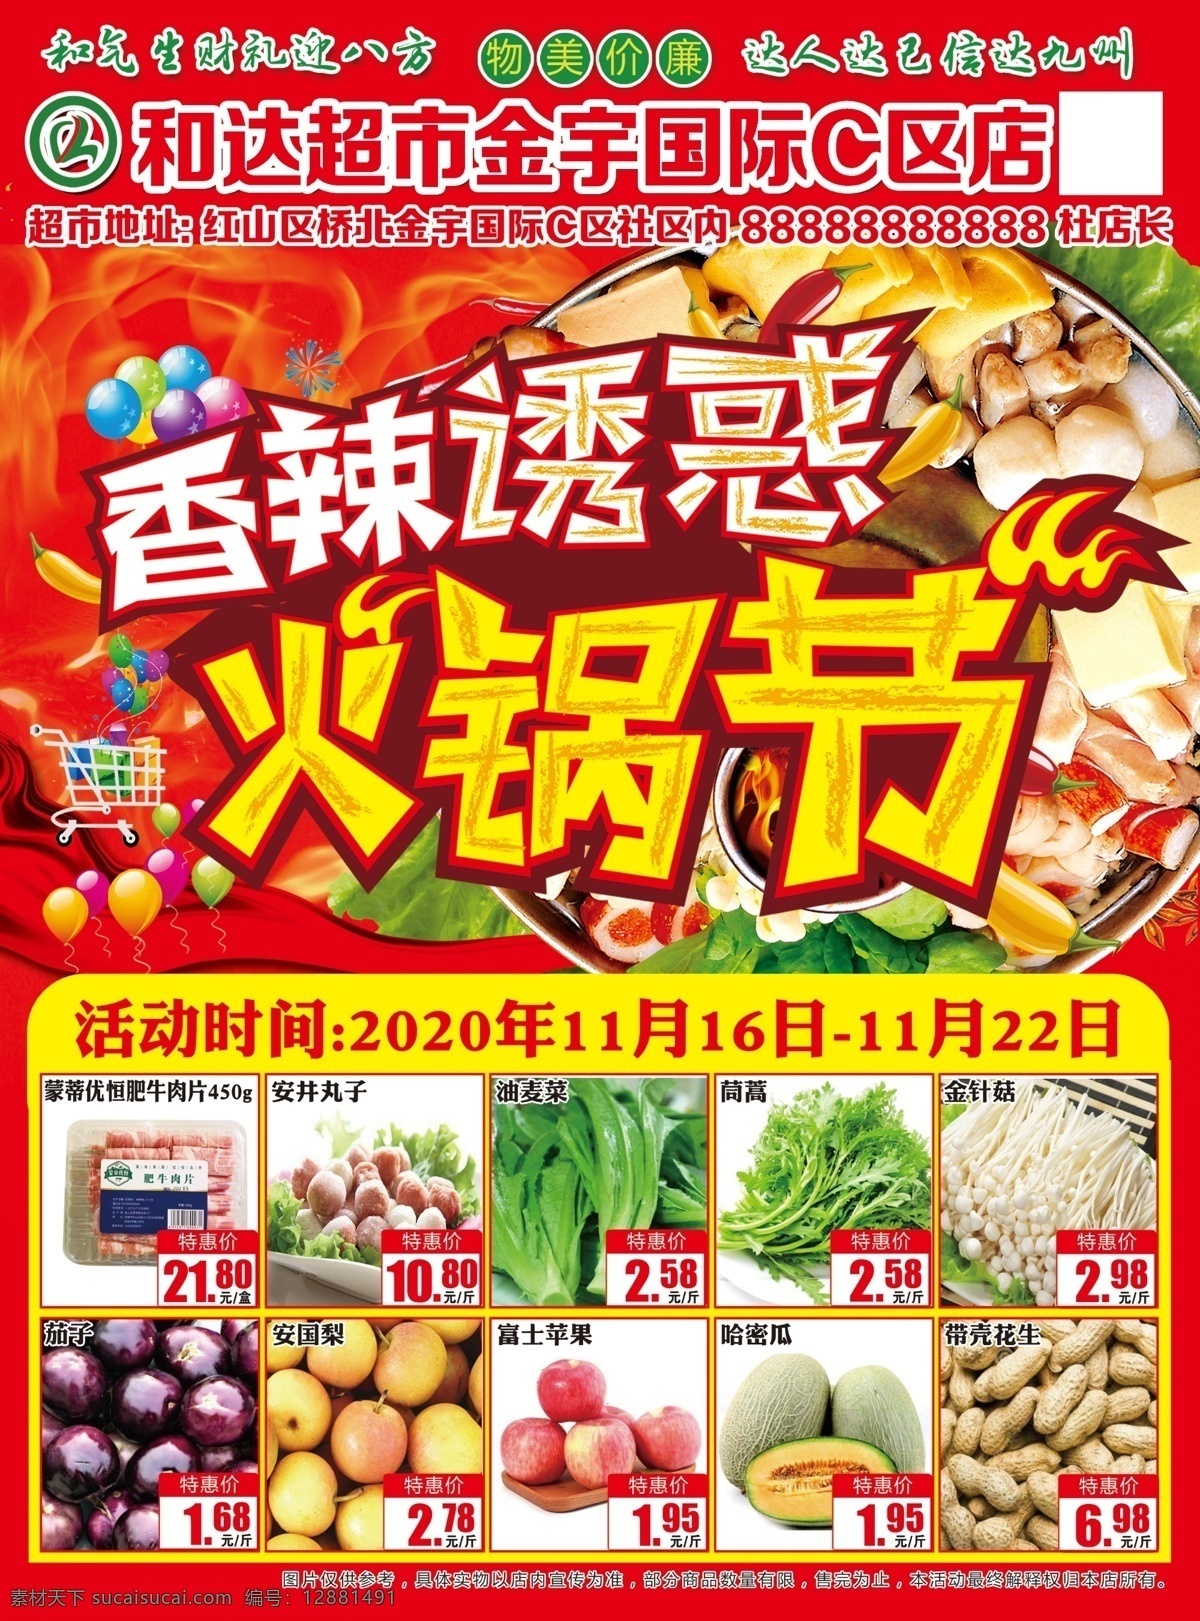 火锅节图片 超市 火锅节 dm 宣传 海报